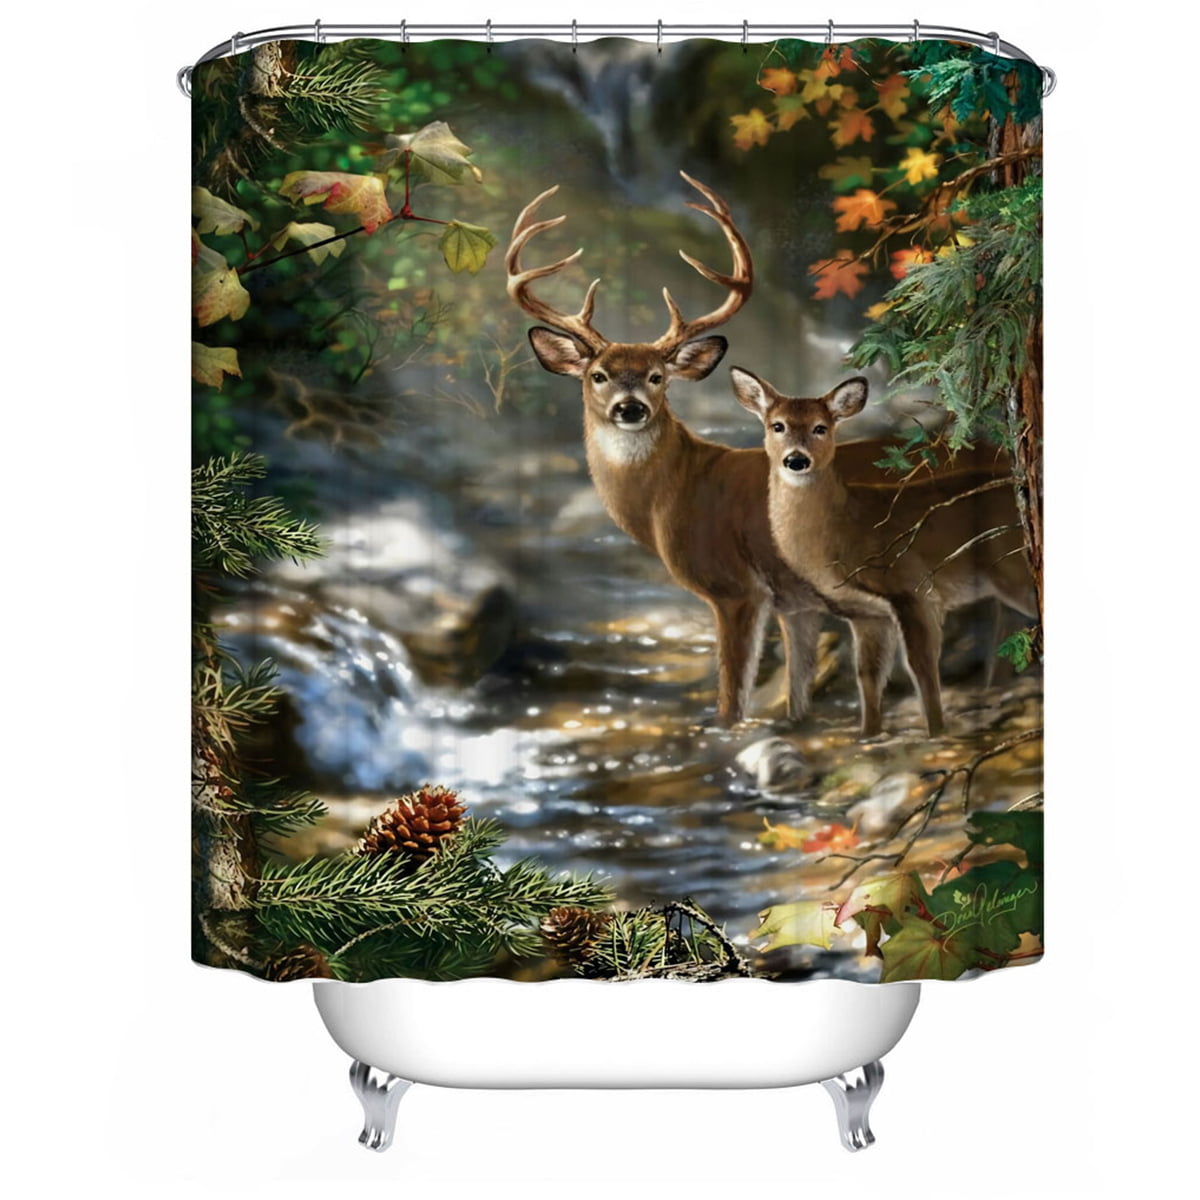 Winter Snow Covered Fir Forest Landscape Deer Shower Curtain Liner Bathroom Mat 